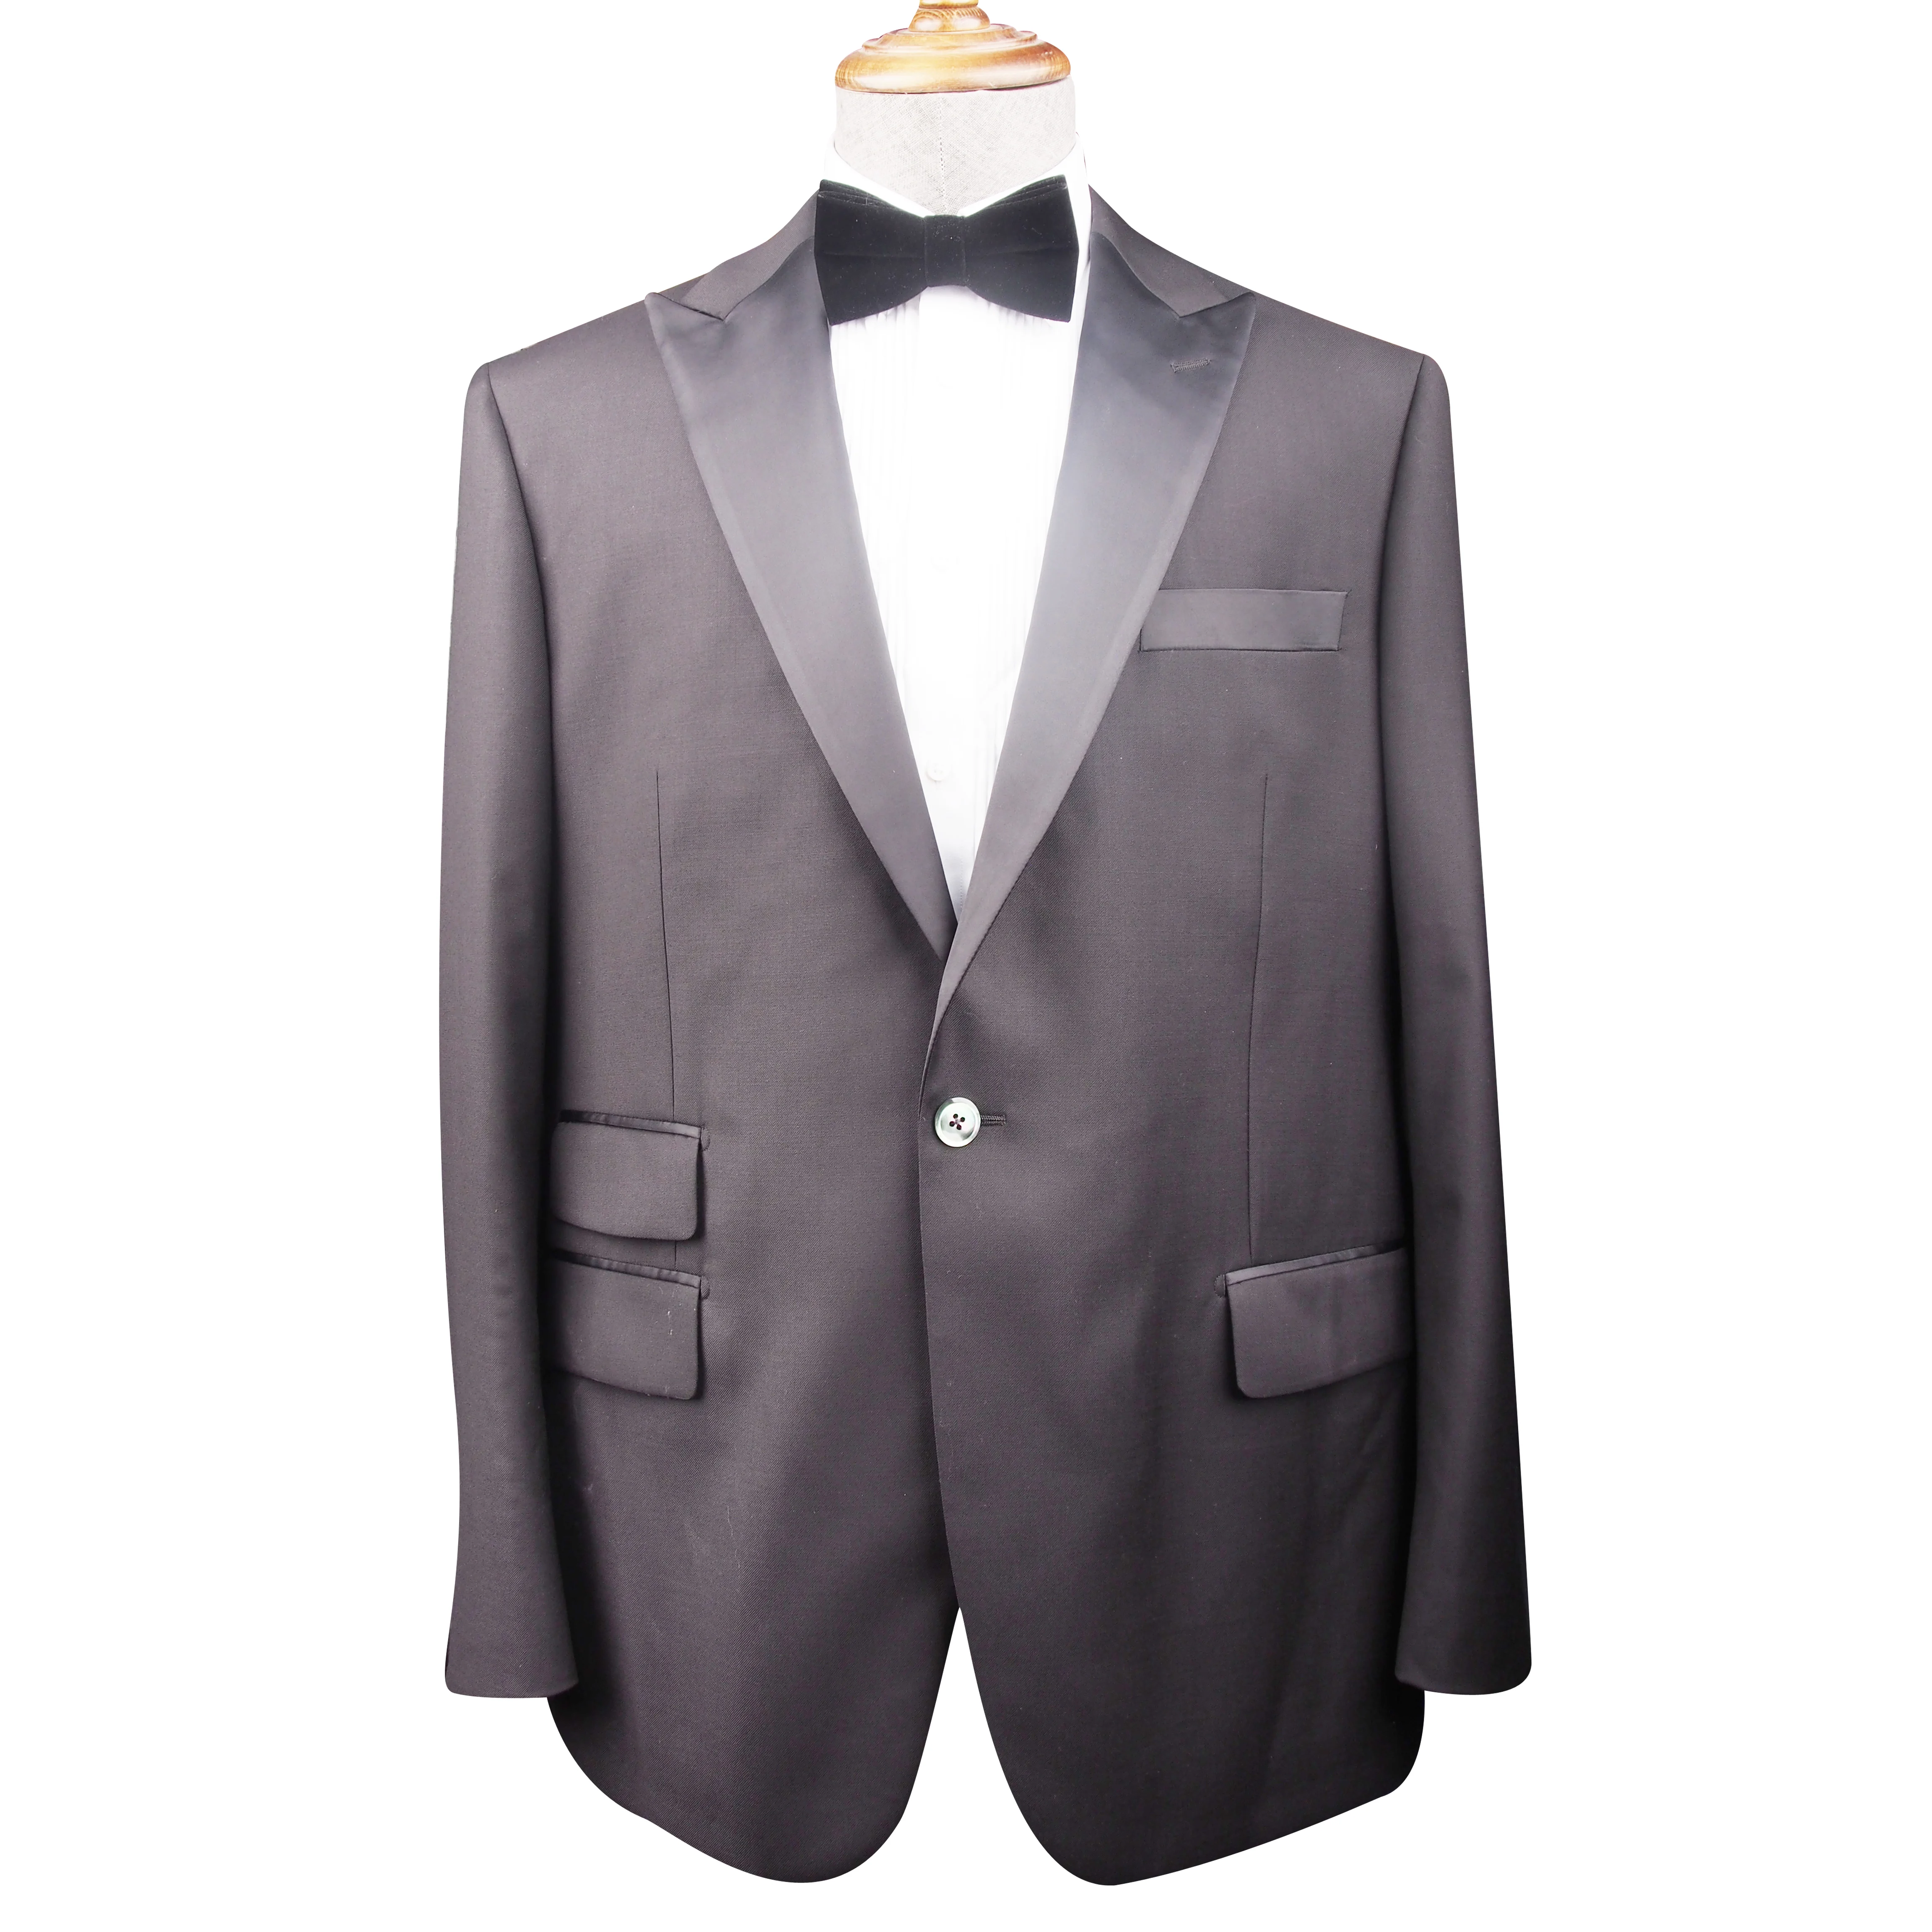 made in China wholesale 2 stukken 100% Wool  Tuxedo Suit modern men's suit